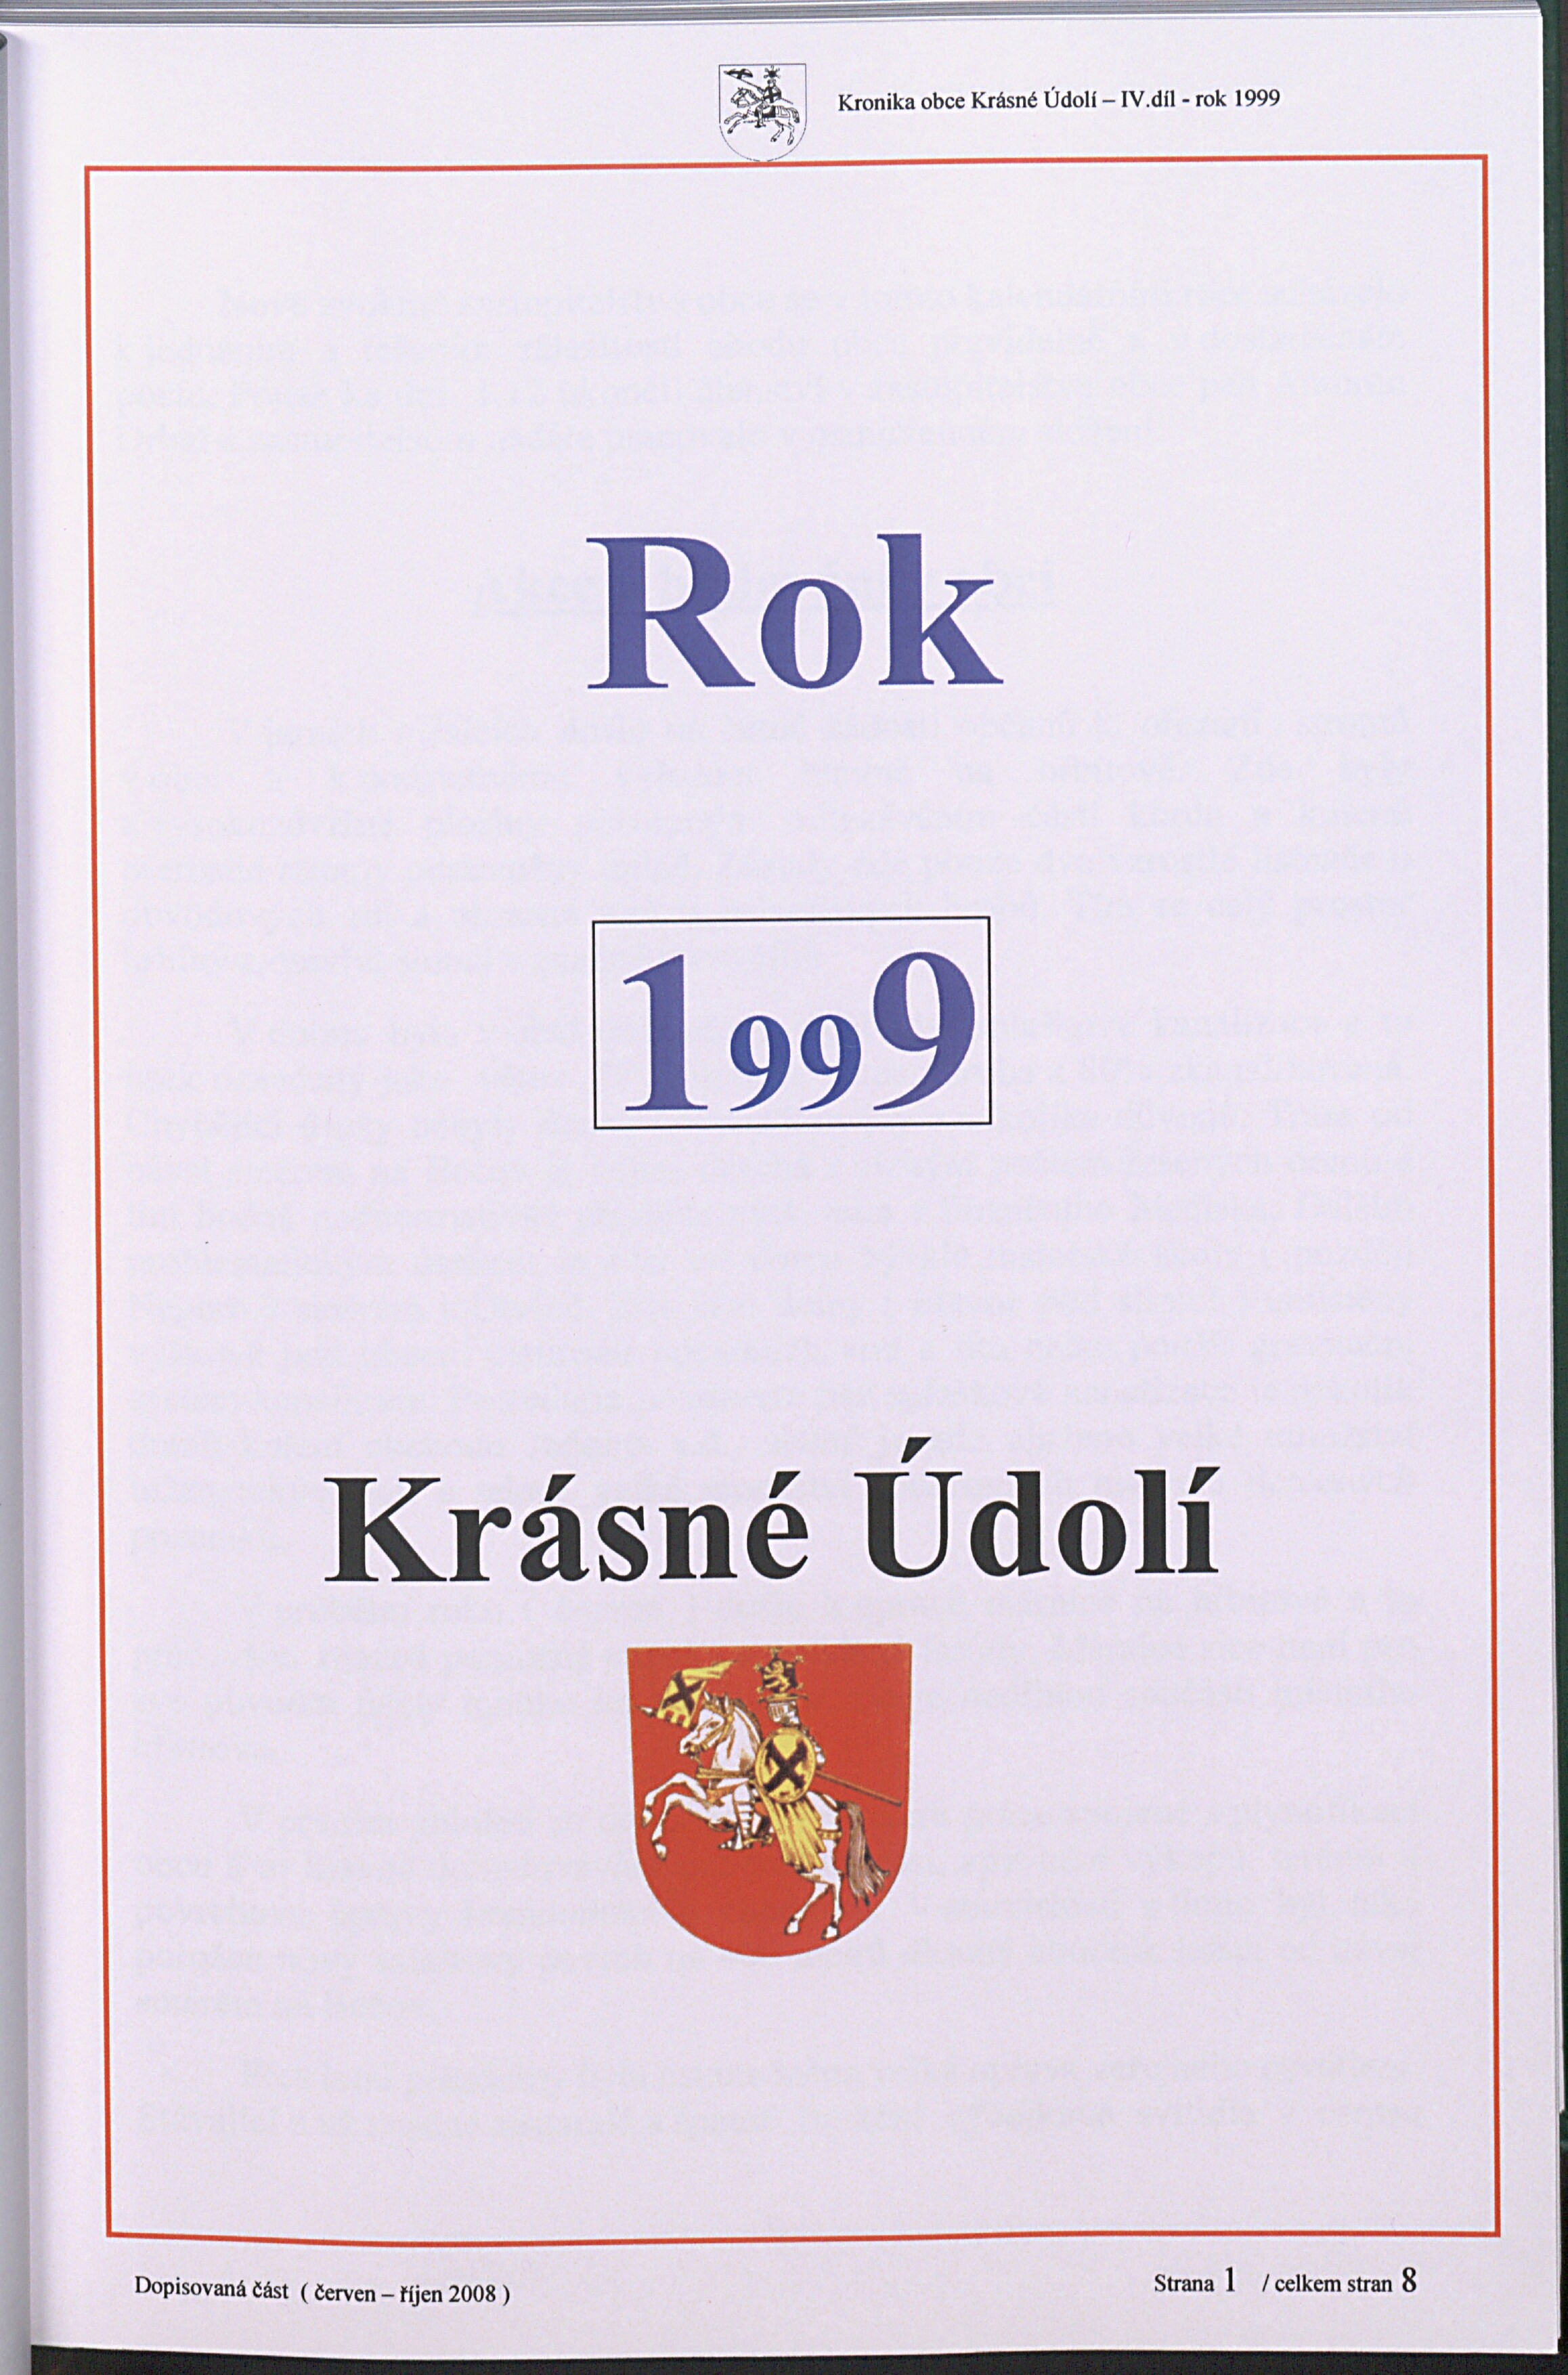 31. soap-kv_01831_mesto-krasne-udoli-1998-2007_0320